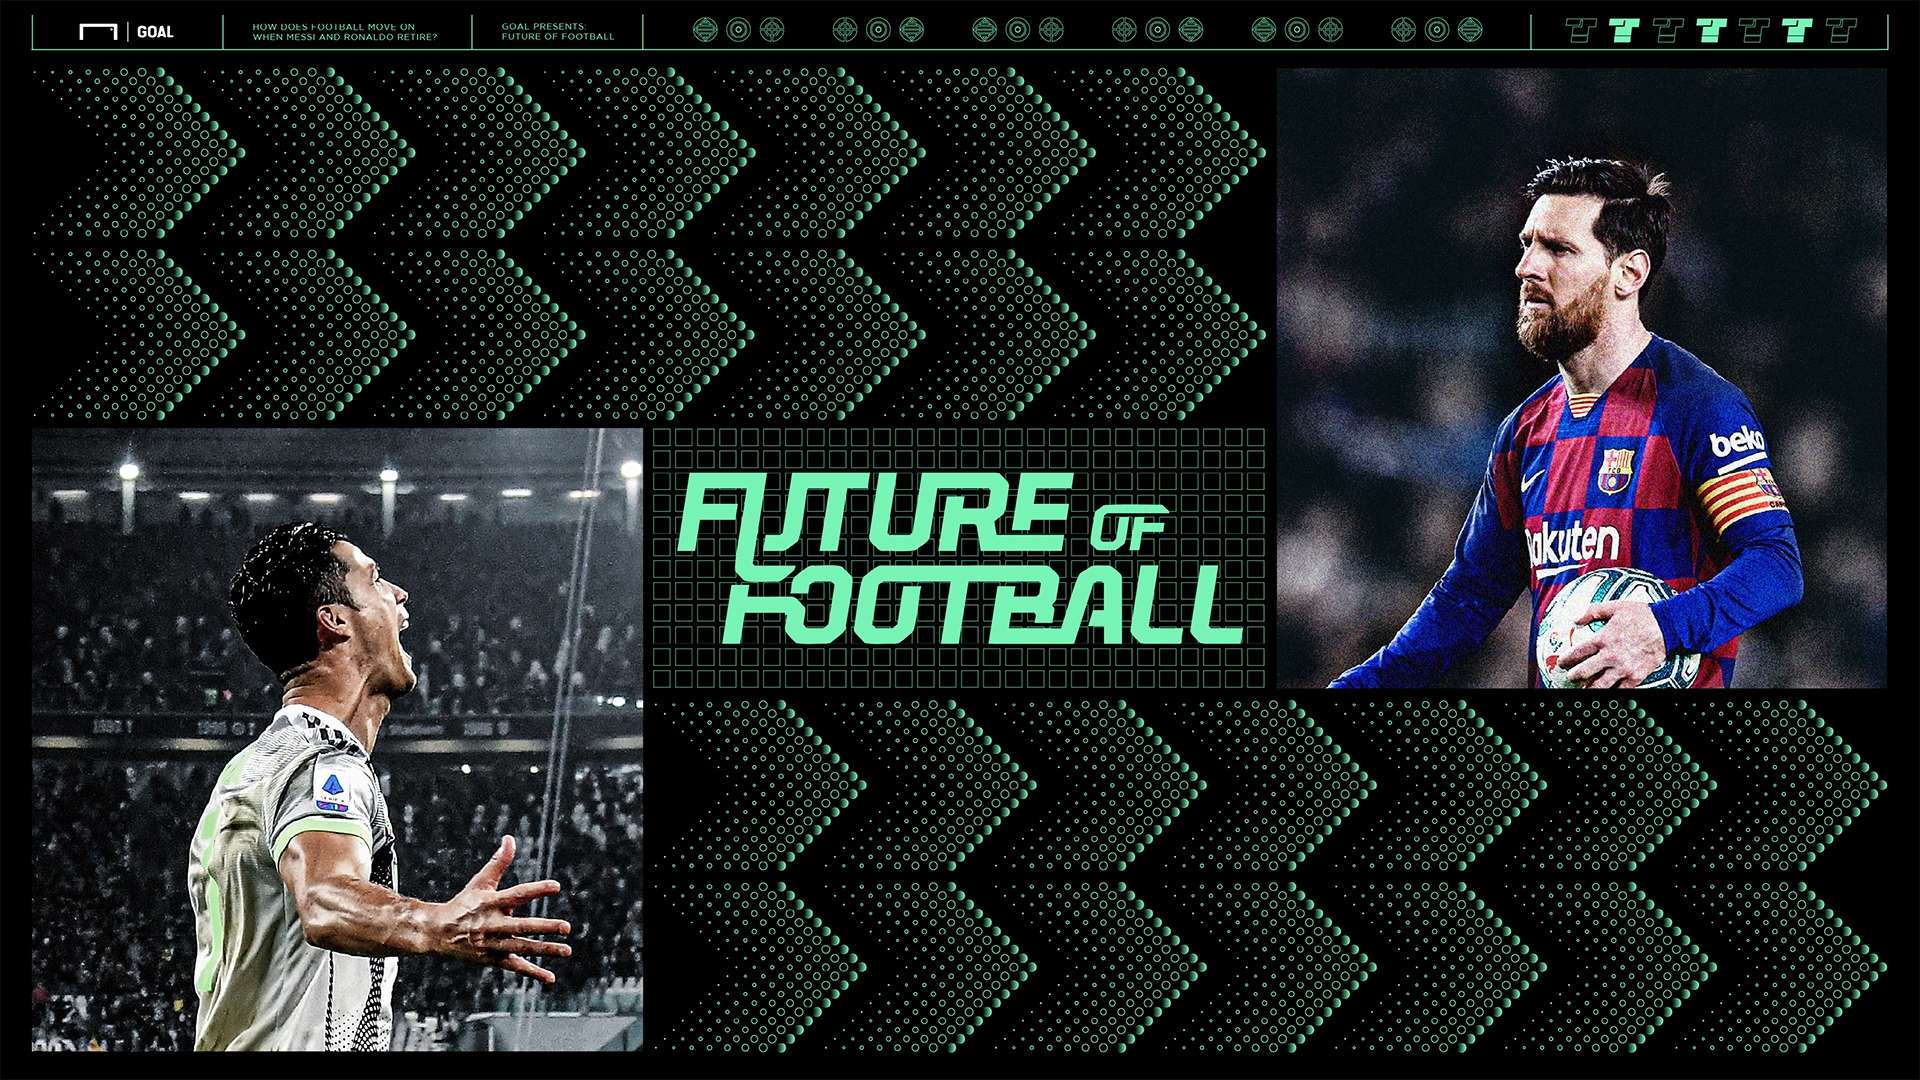 Lionel Messi Cristiano Ronaldo Future of Football GFX